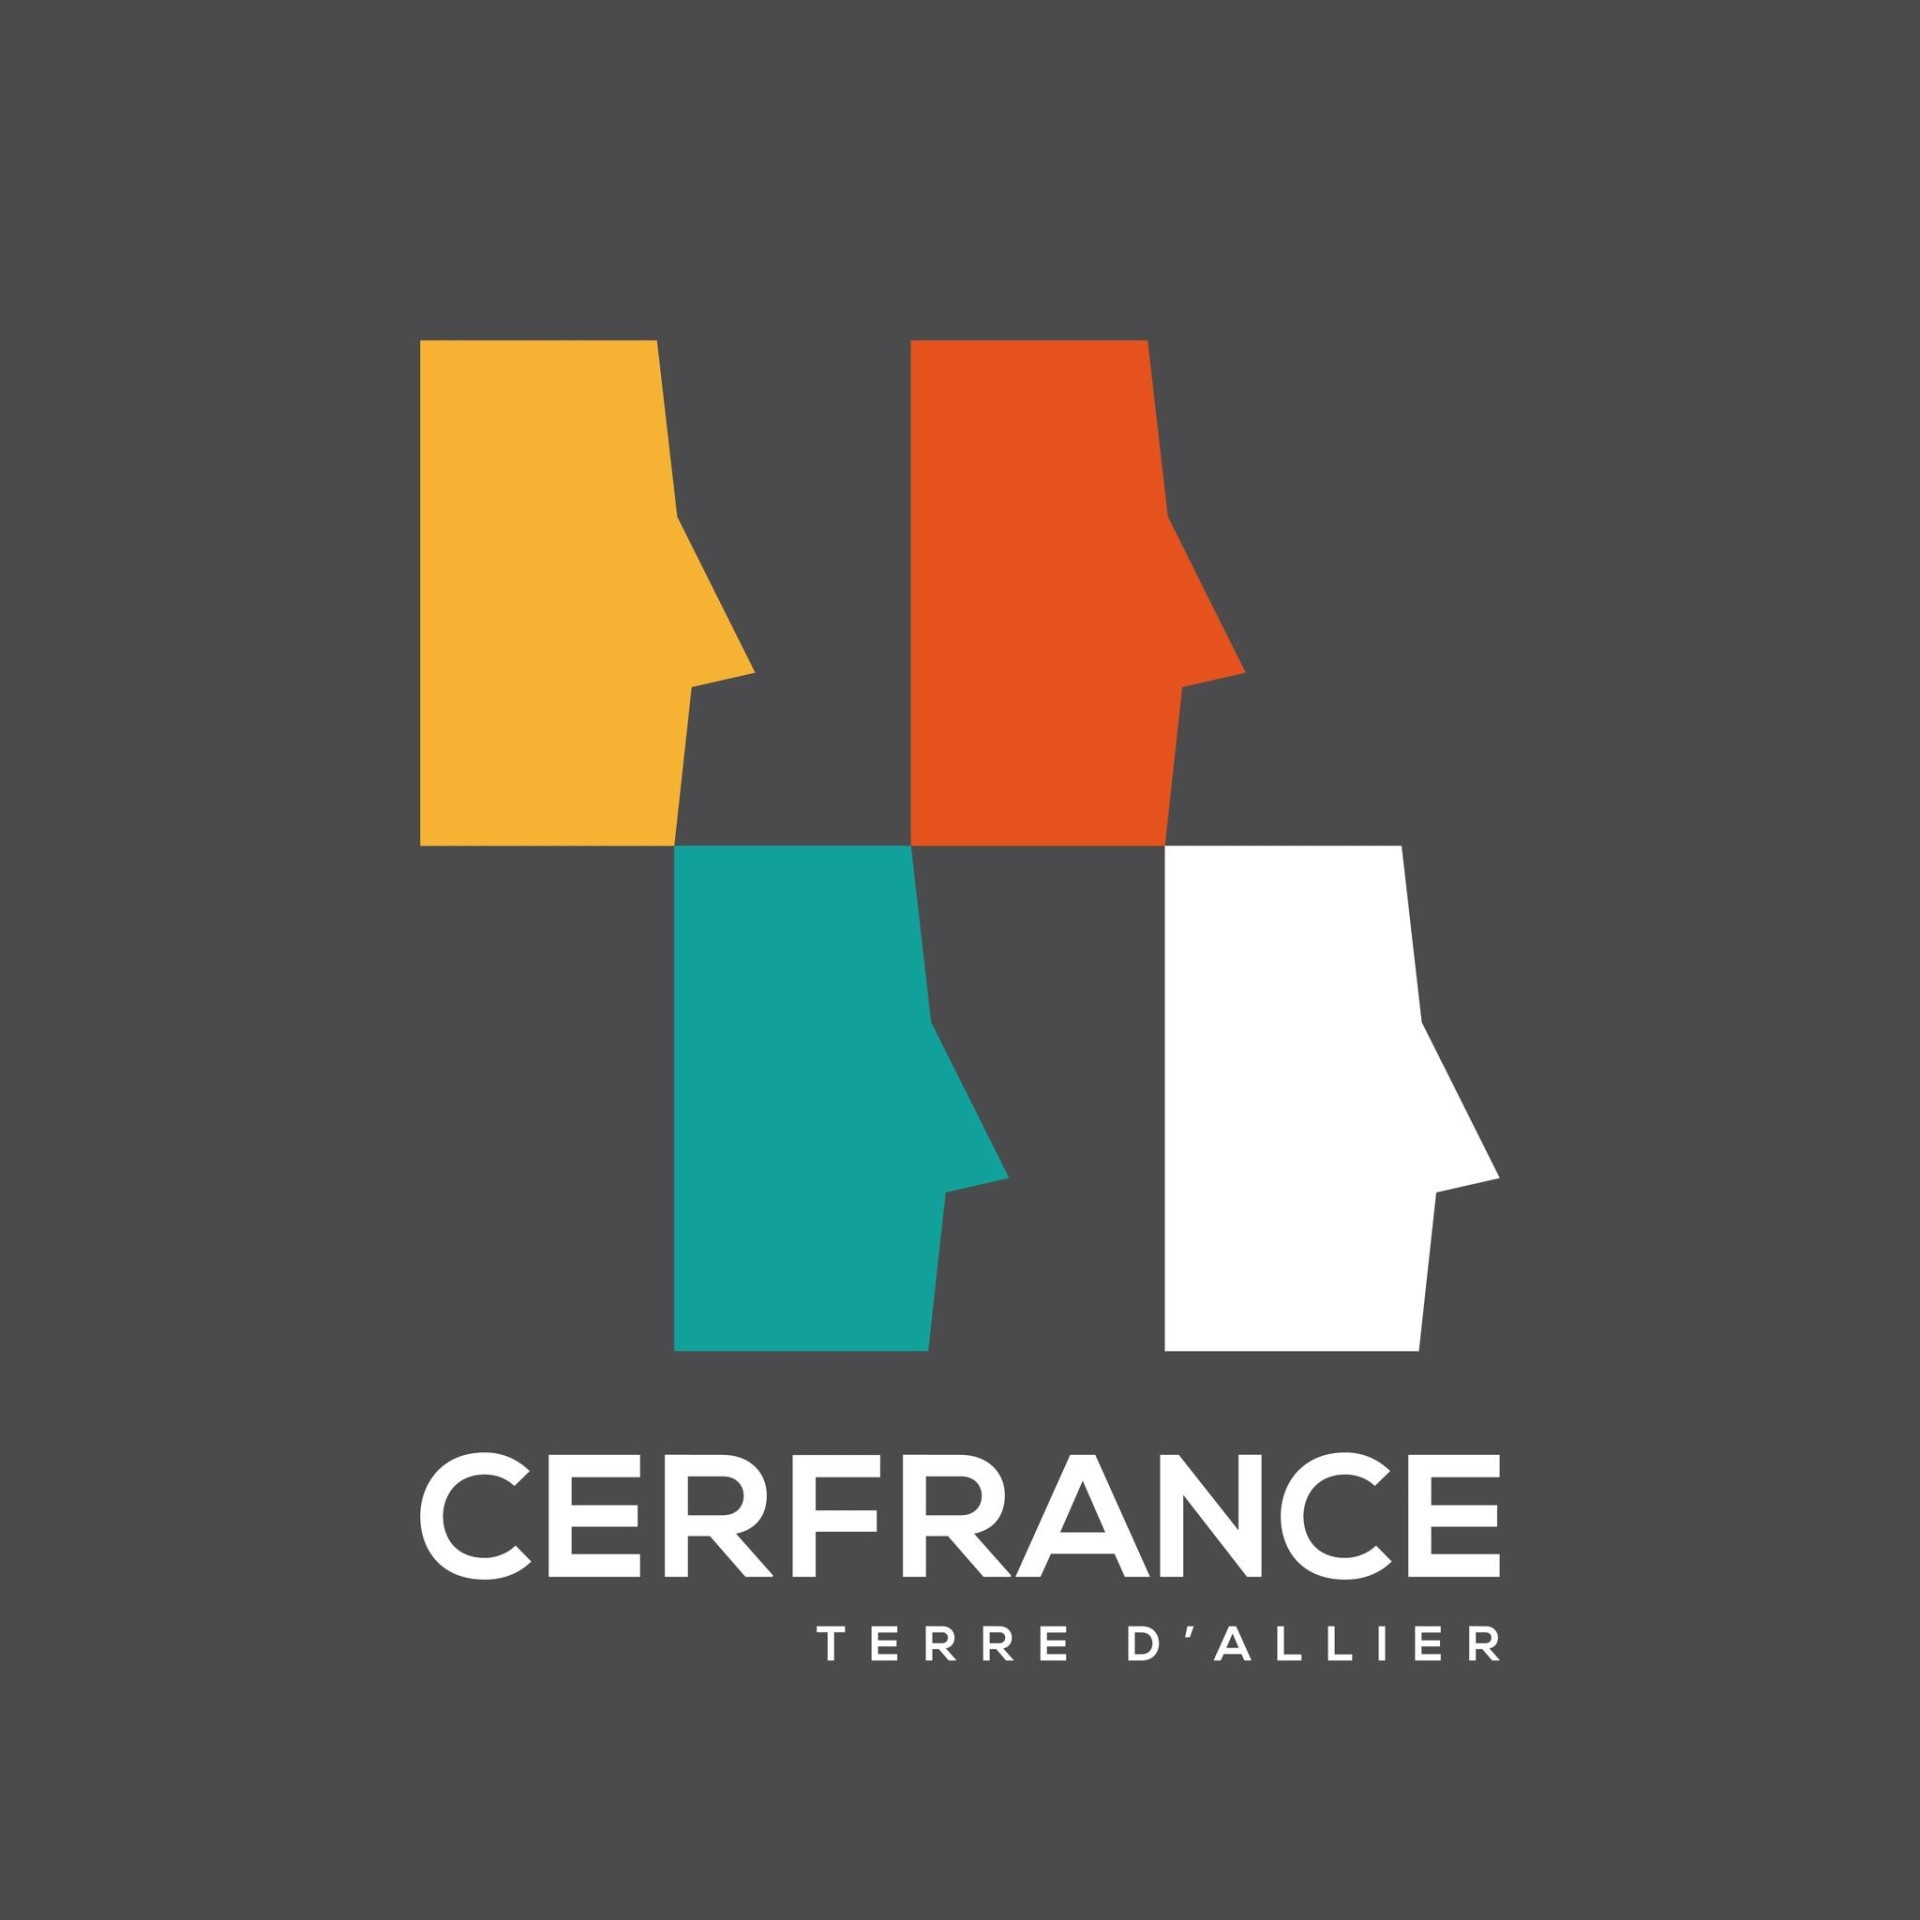 Cerfrance logo